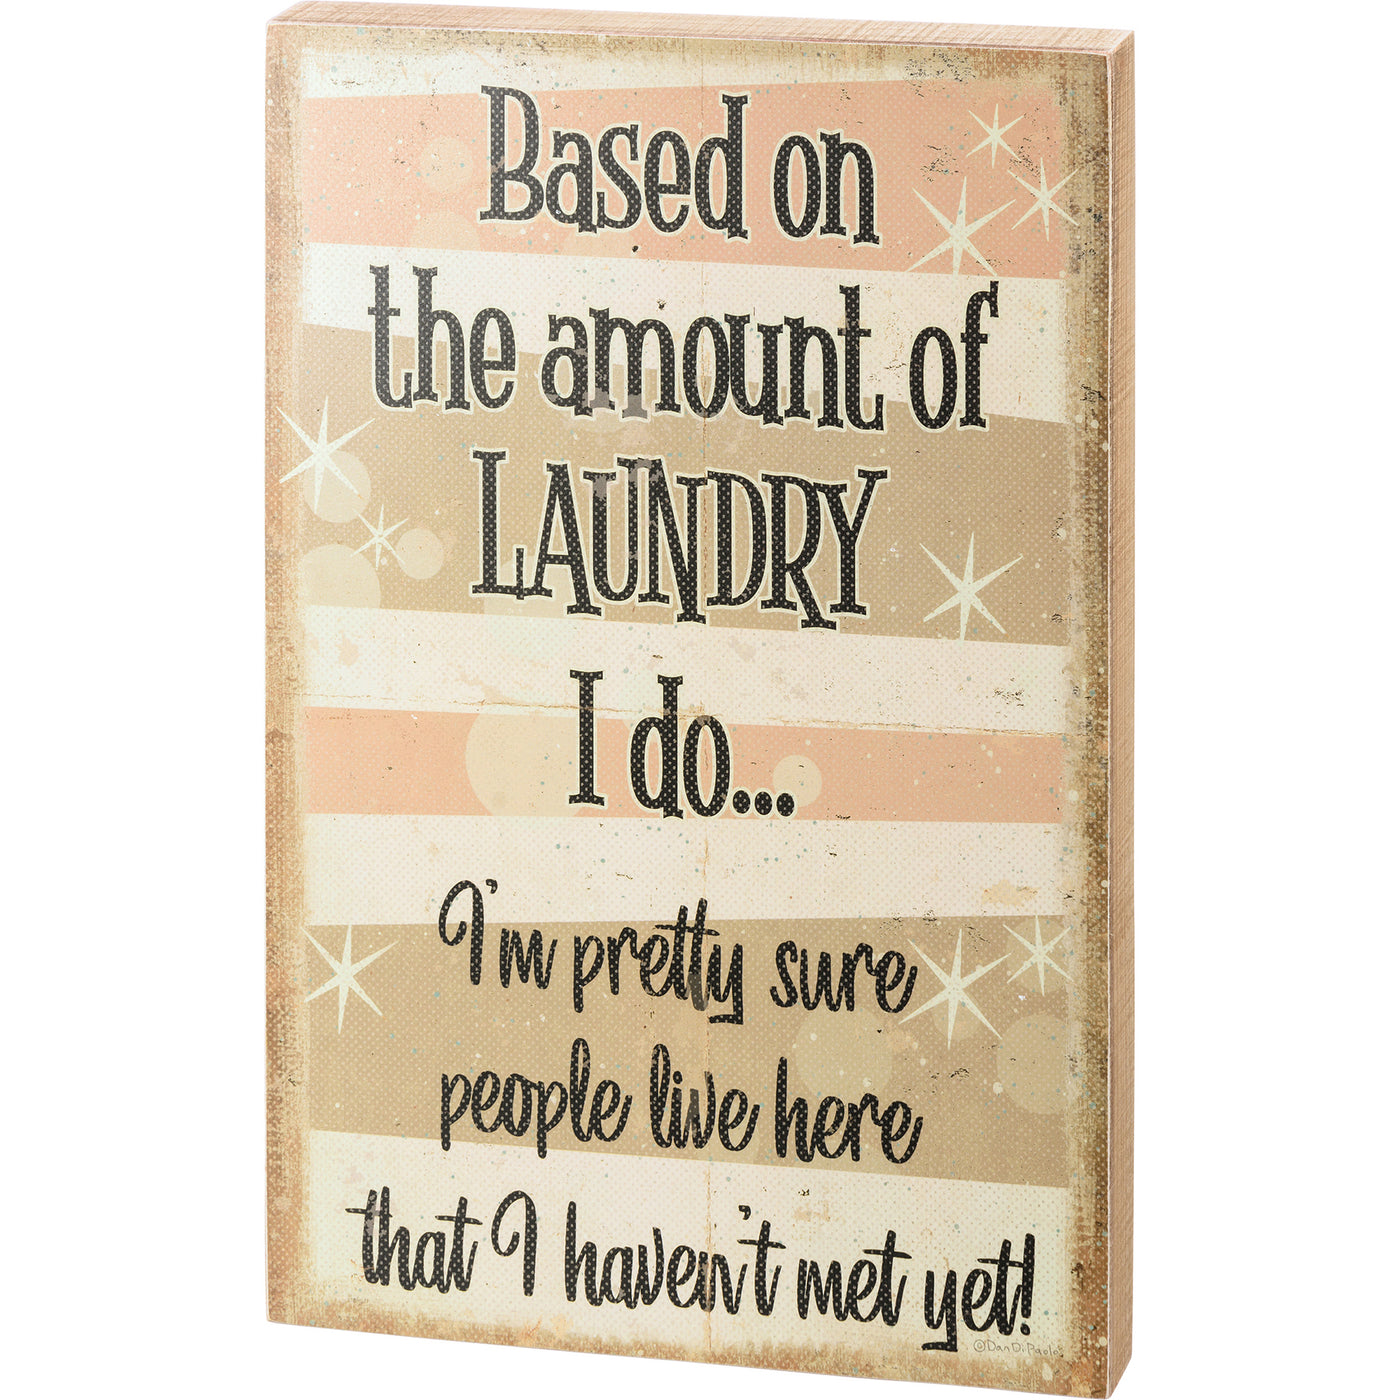 Based On The Amount Of Laundry I Do 18" Box Sign